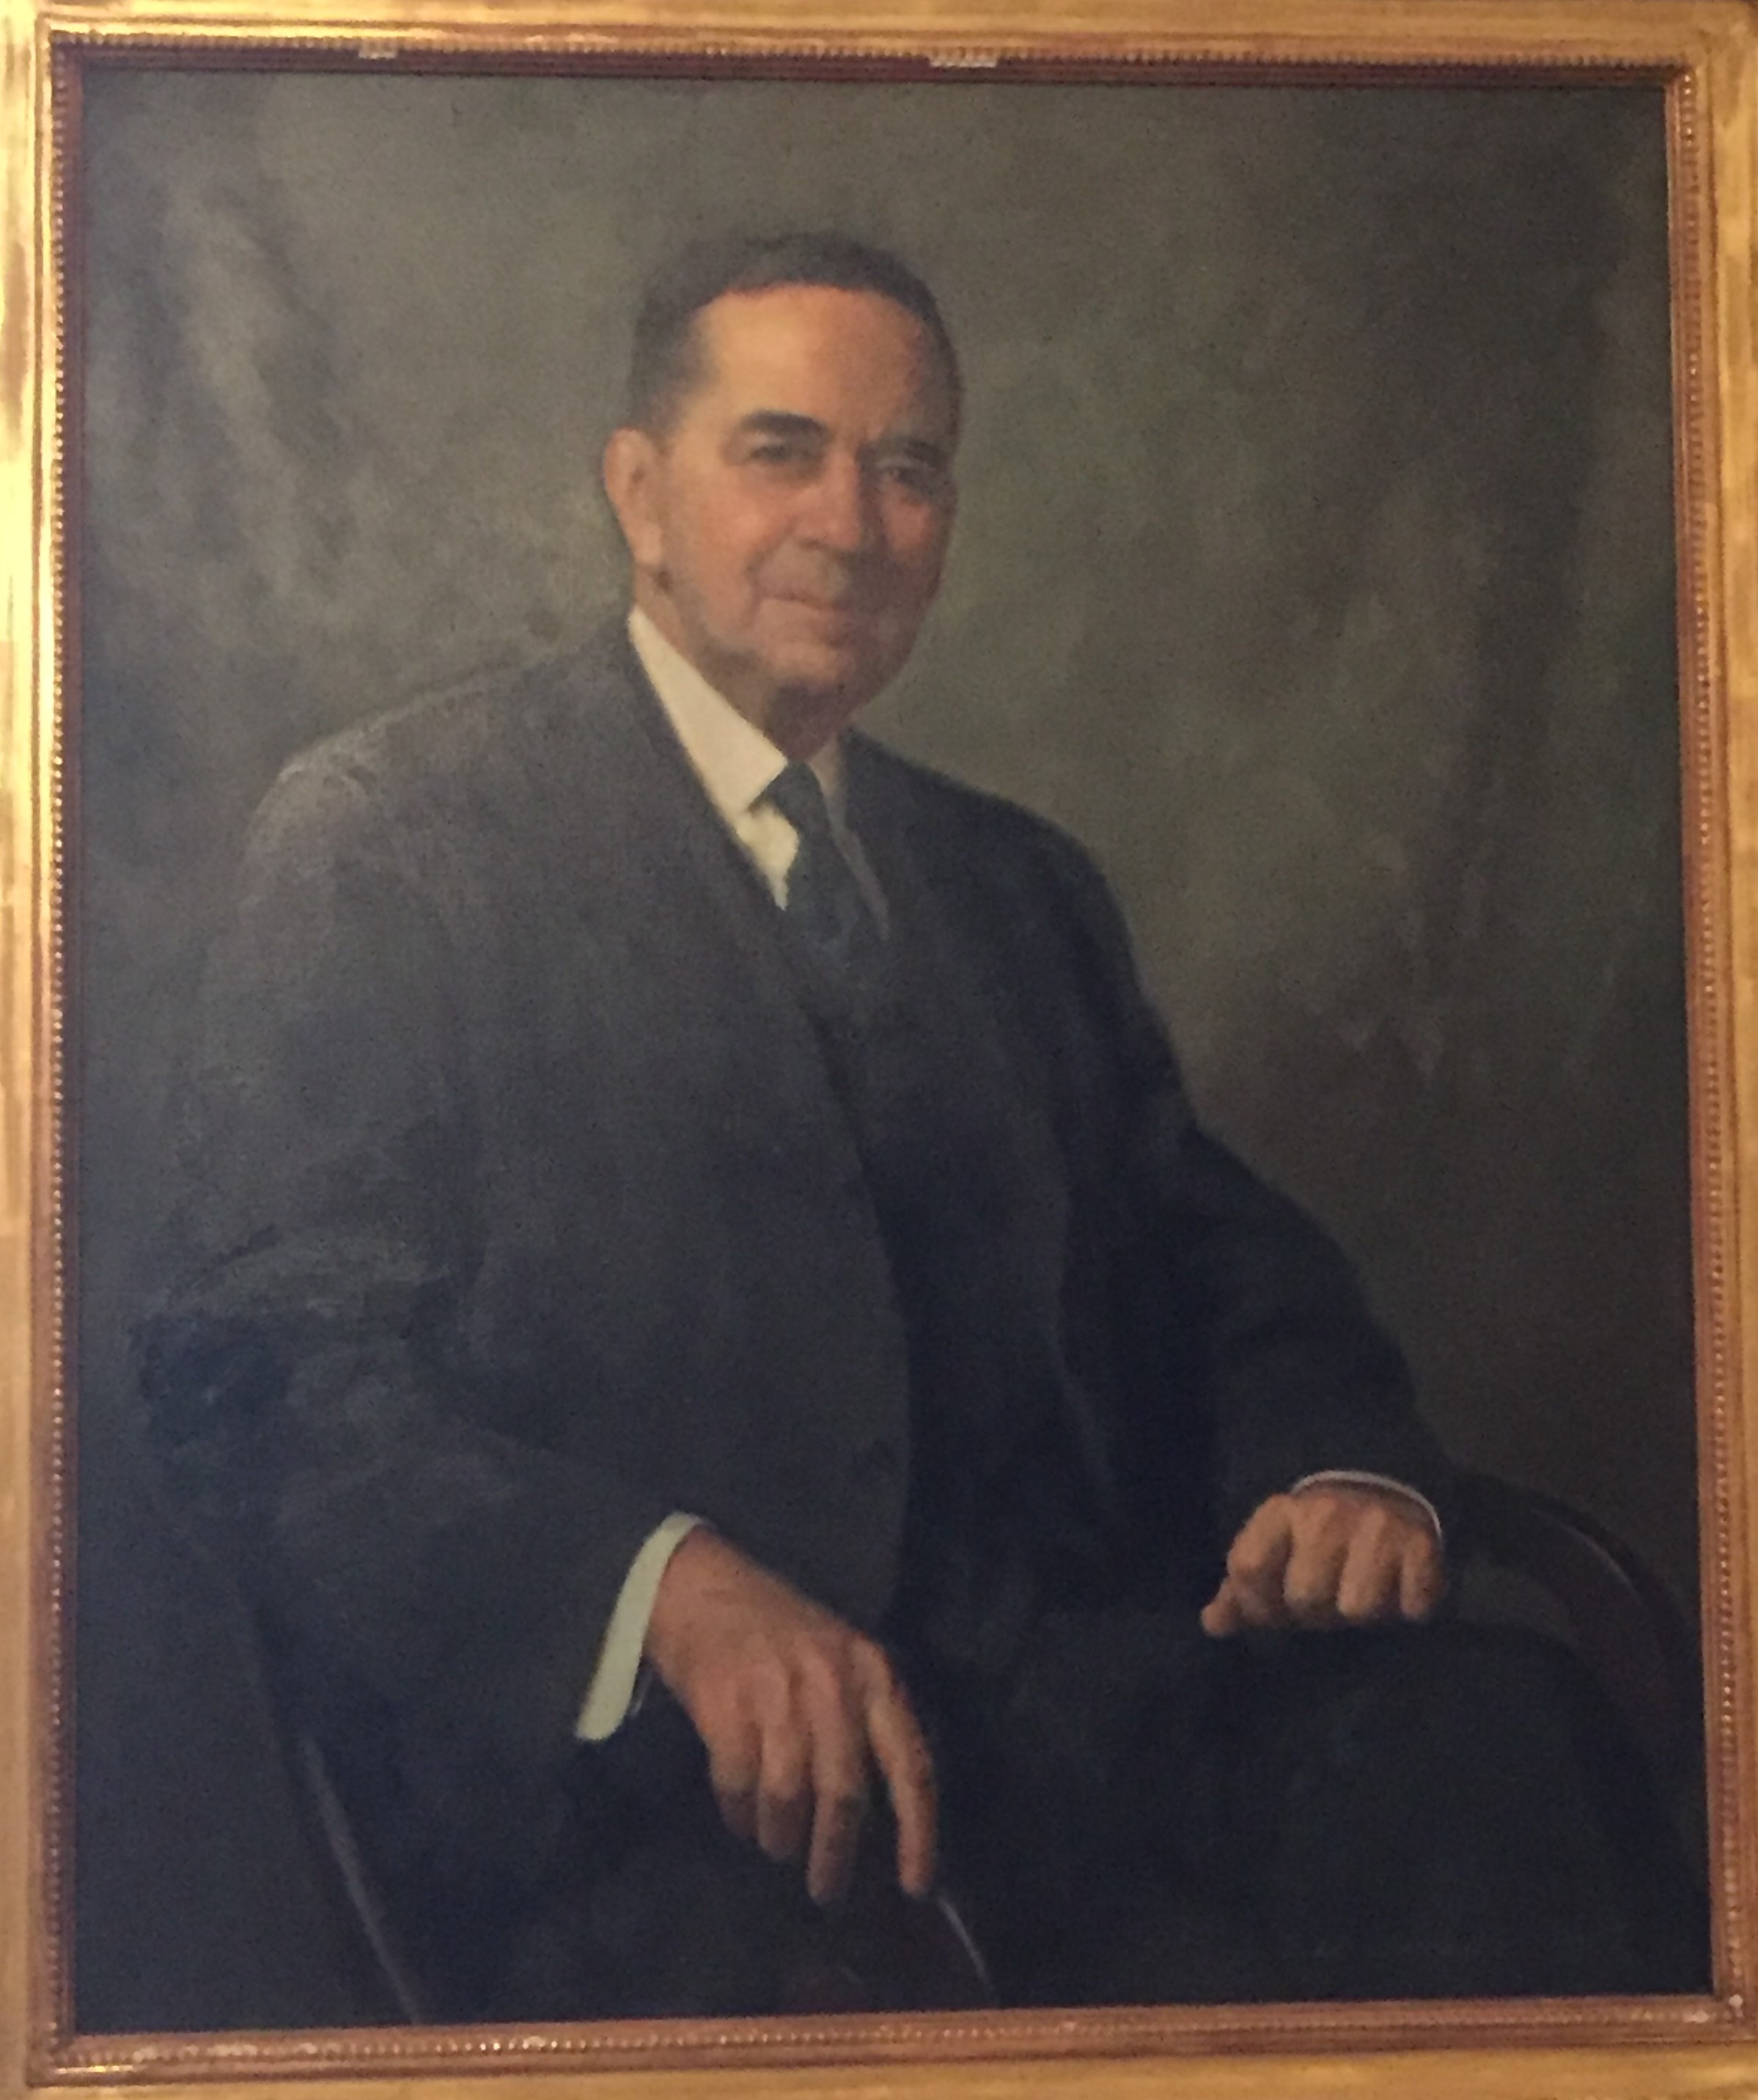 Retrato pintado de W. Parsons Todd. Está de cara al espectador y tiene una ligera sonrisa. Lleva un traje oscuro y una corbata.